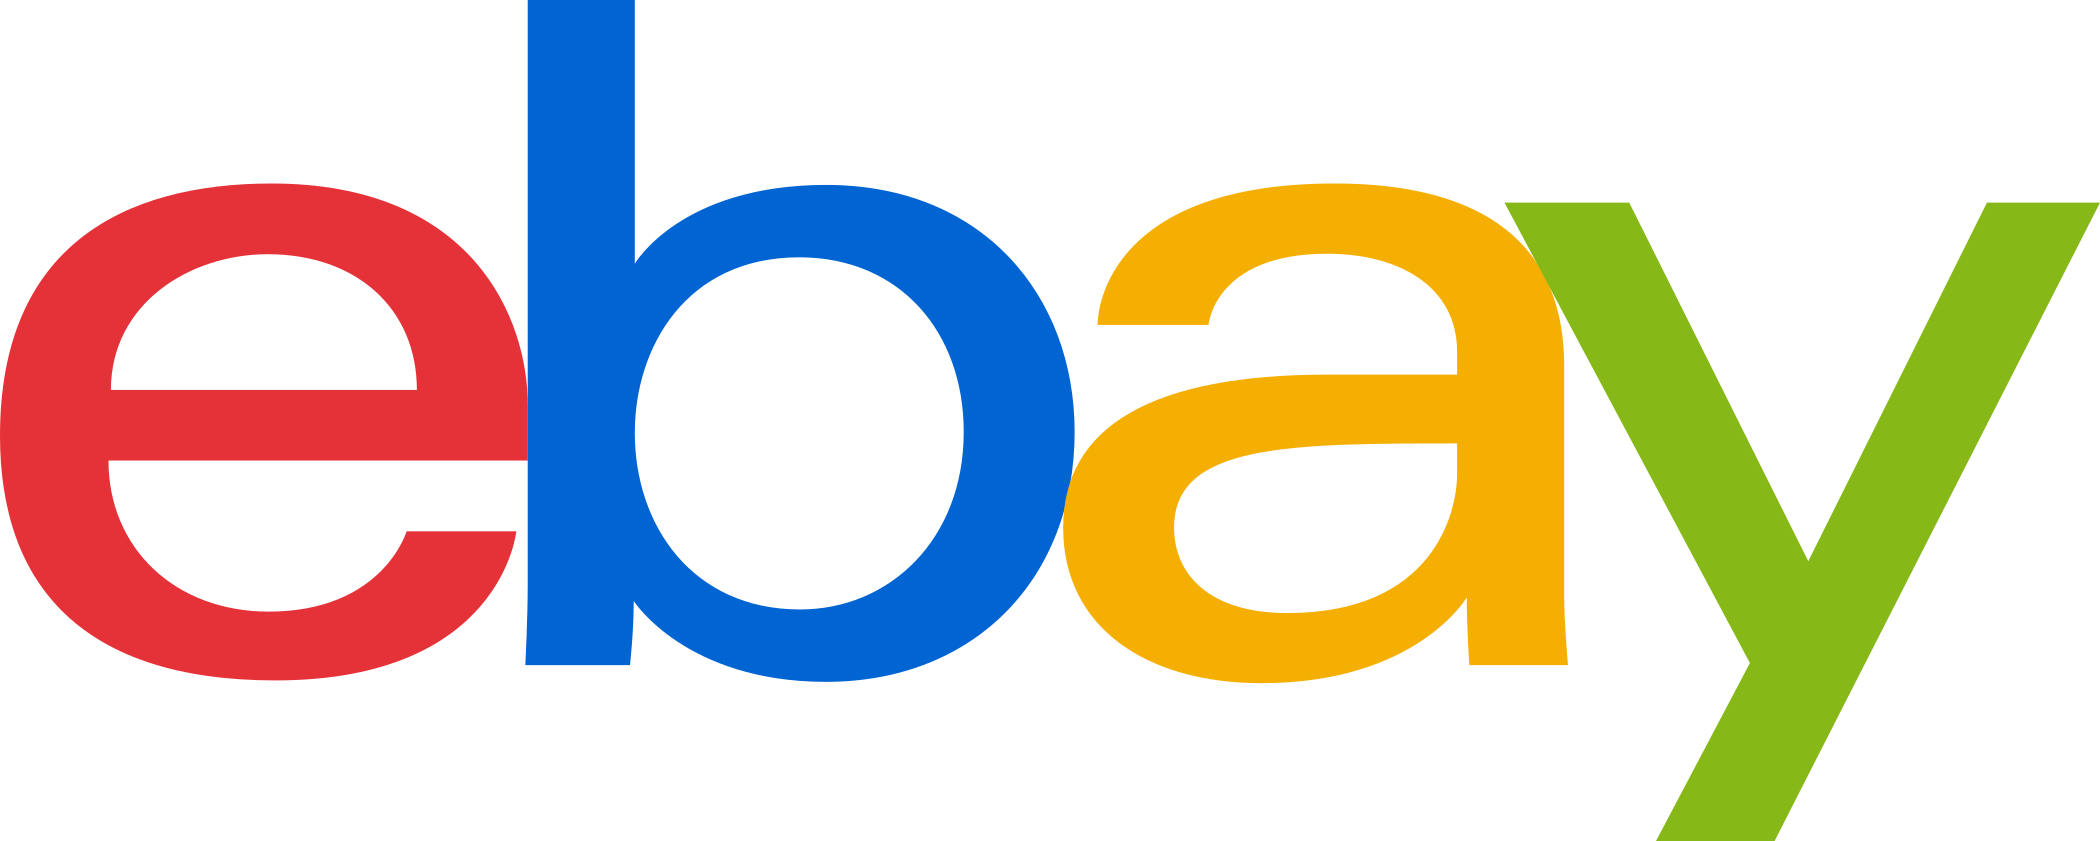 ebay logo 1 1 - eBay Logo